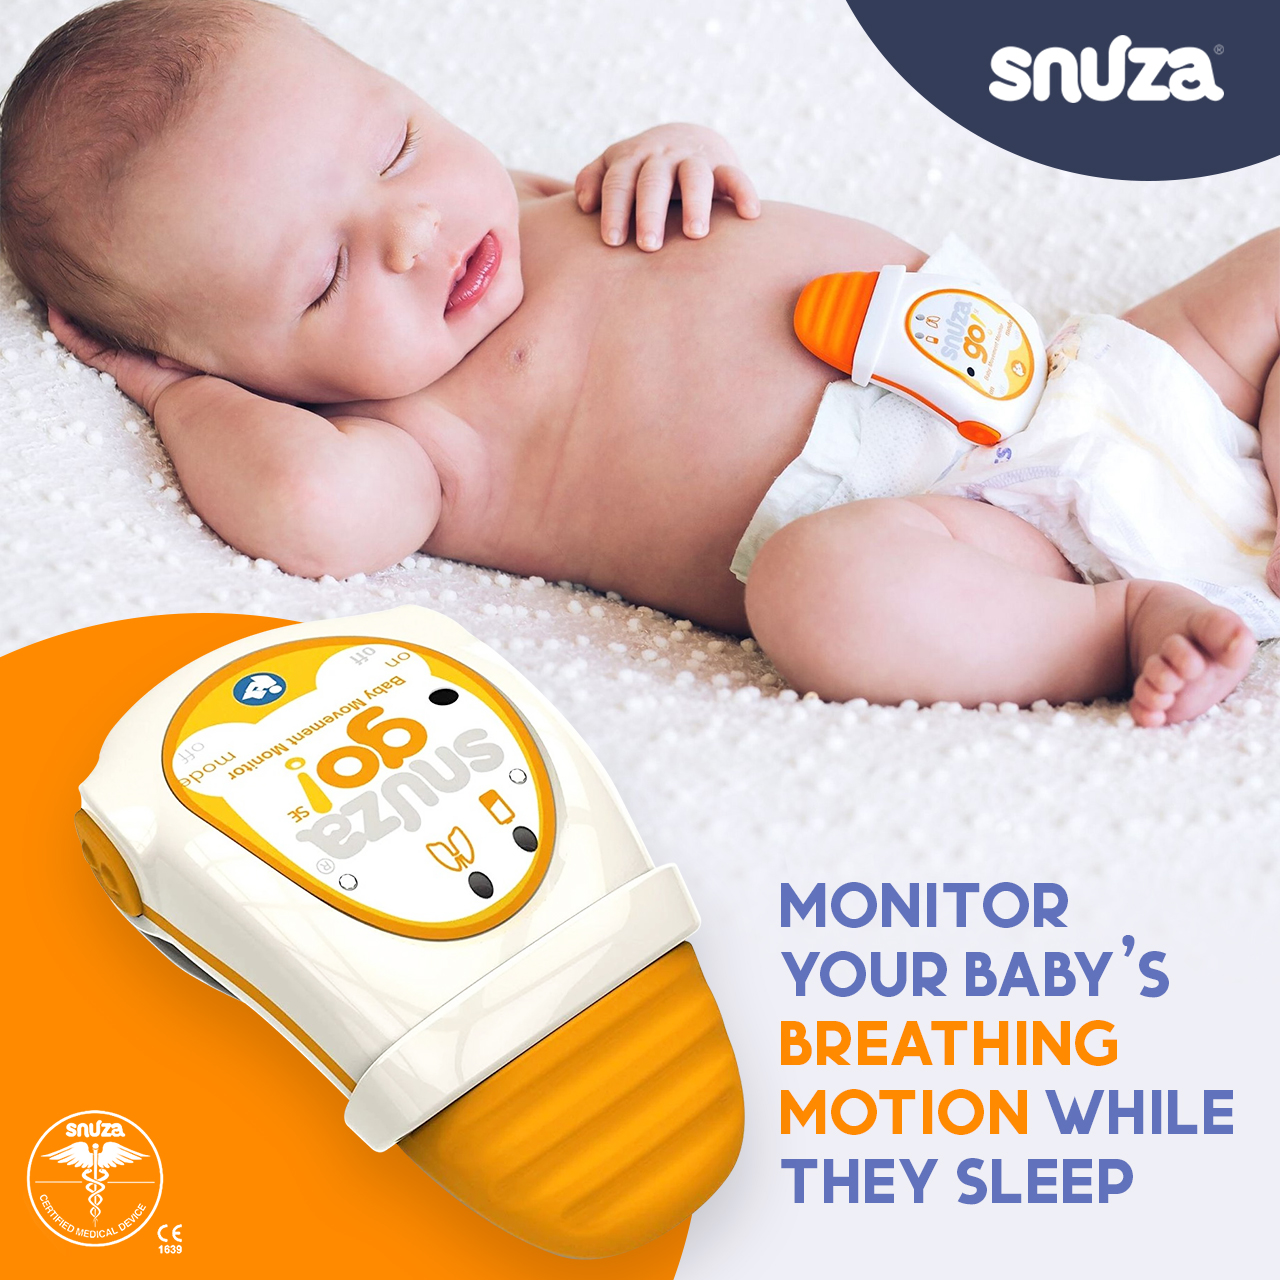 ลูกน้อยหยุดหายใจ! ตัวจับการหายใจของทารกตอนหลับ จะส่งเสียงเตือนหากทารกหายใจผิดปกติ หรือหยุดหายใจ Snuza - Go